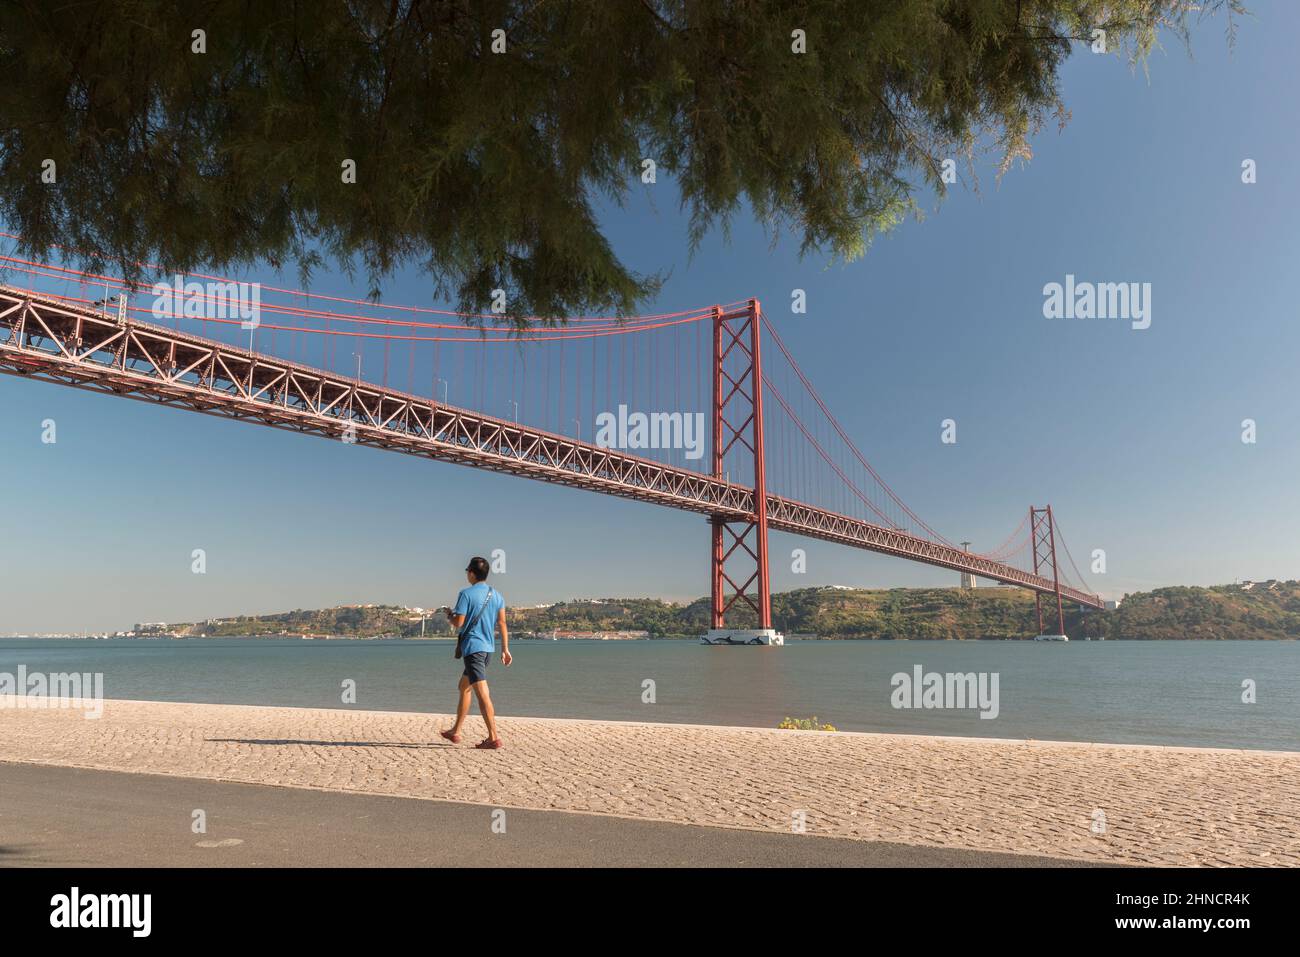 Le plus long pont suspendu au monde, le pont 25 de Abril, reliant la ville de Lisbonne à la municipalité d'Almada au-dessus du Tage. Banque D'Images